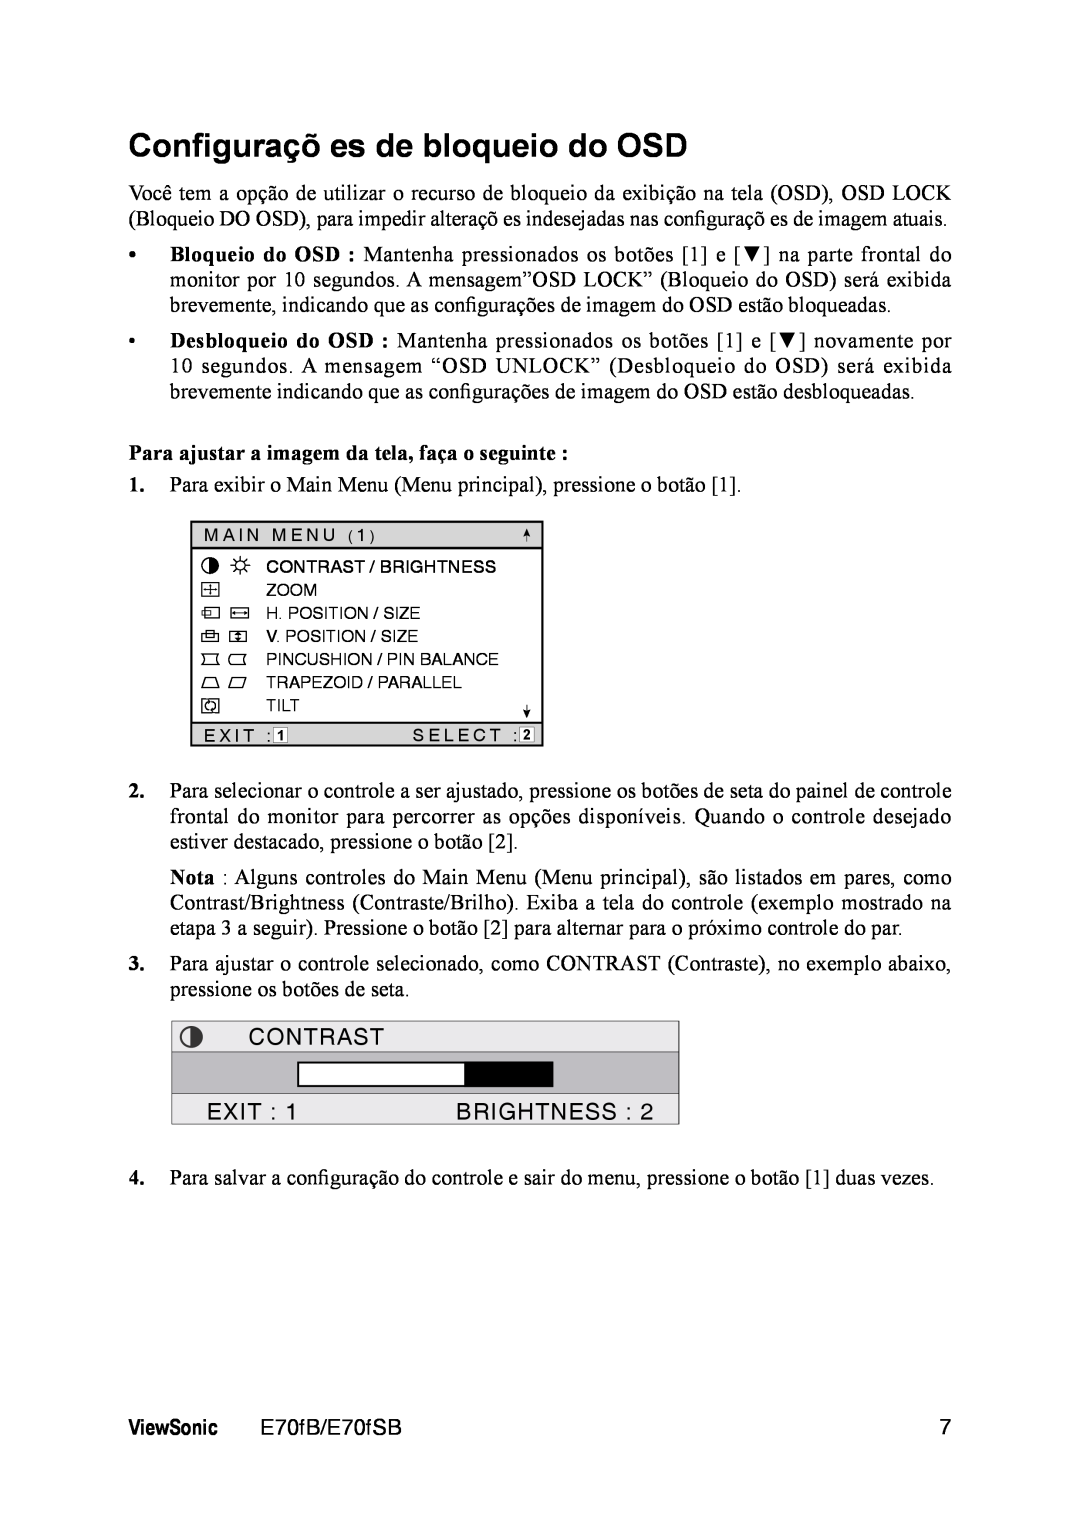 ViewSonic E70FSB manual Conﬁguraçõ es de bloqueio do OSD, CONTRAST EXIT : 1BRIGHTNESS, ViewSonic 